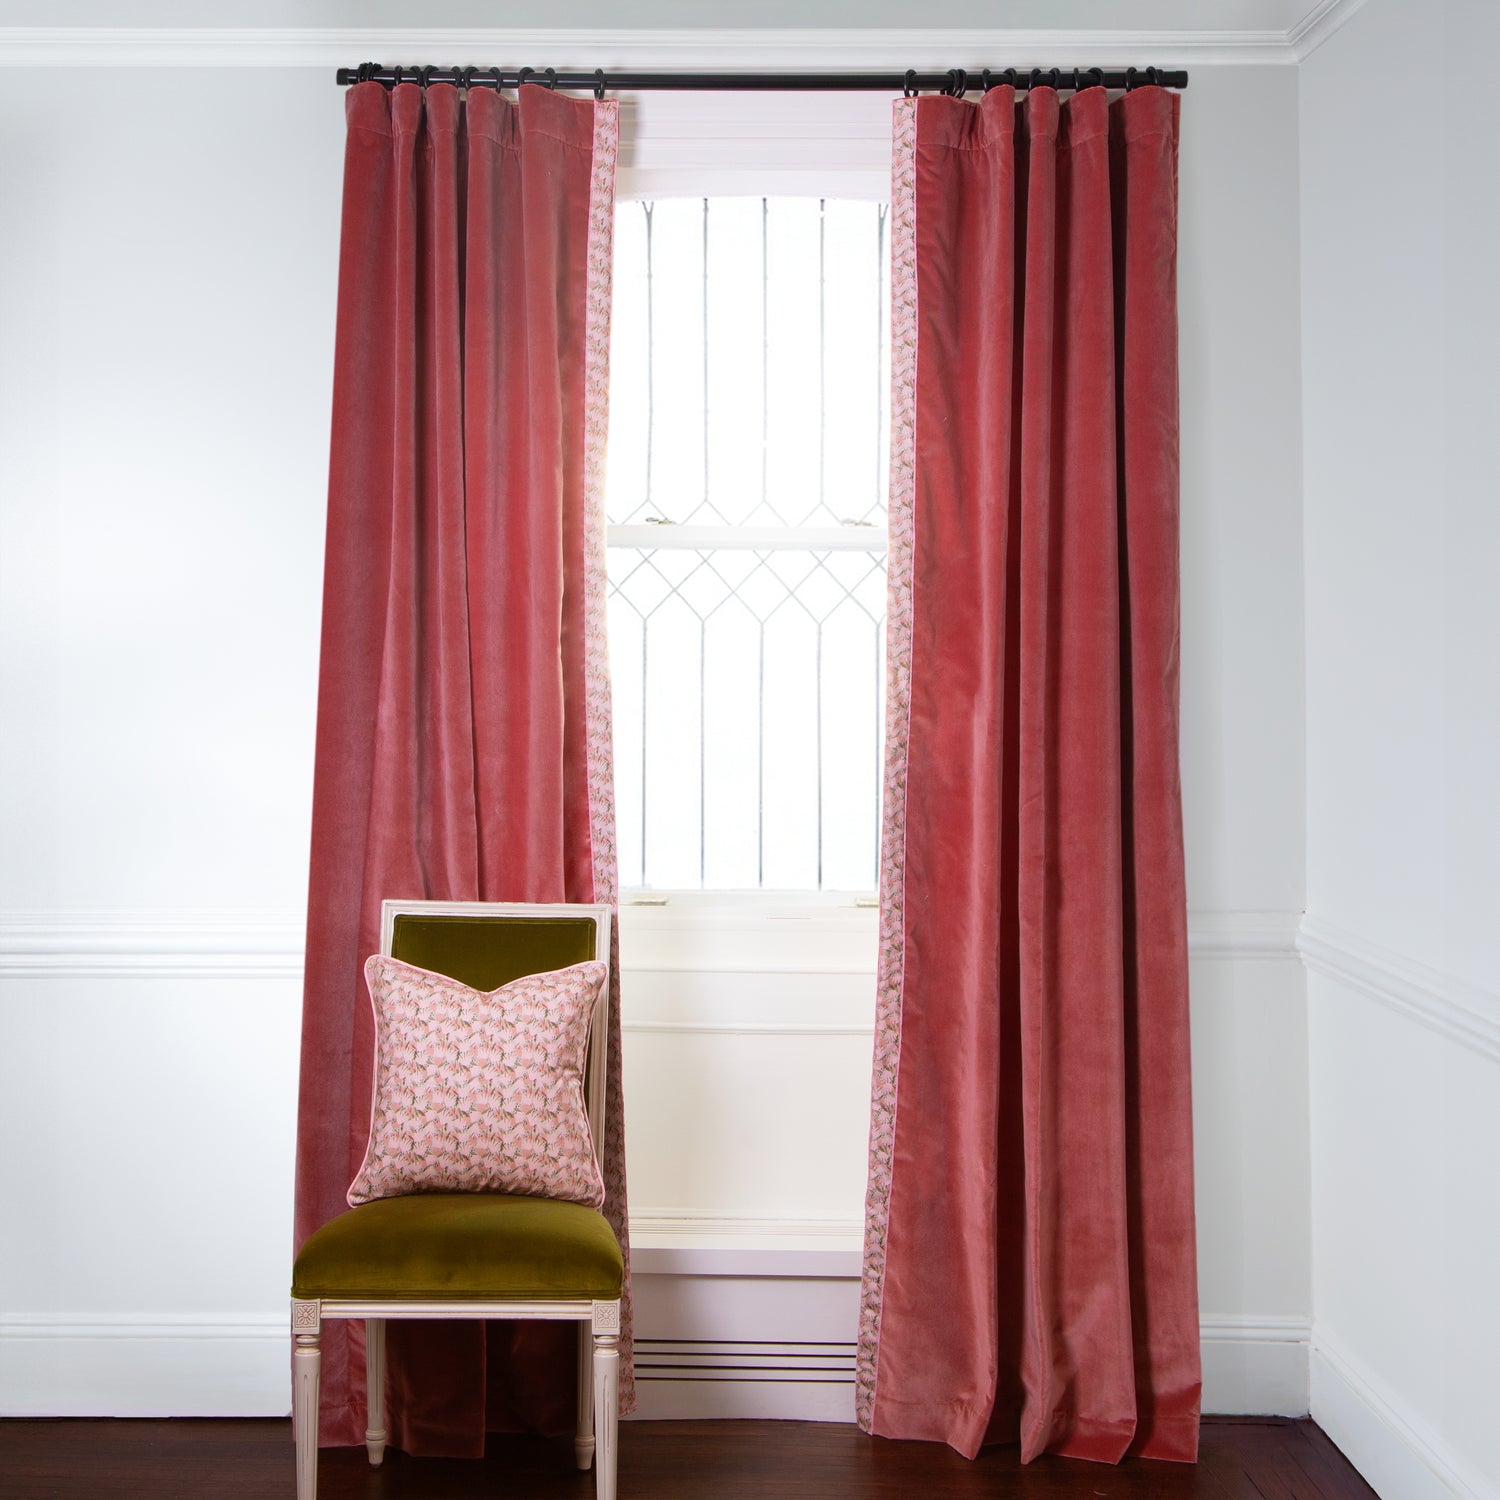 Velvet Curtains With Pom Pom or Tassel Trim, Velvet Tassel